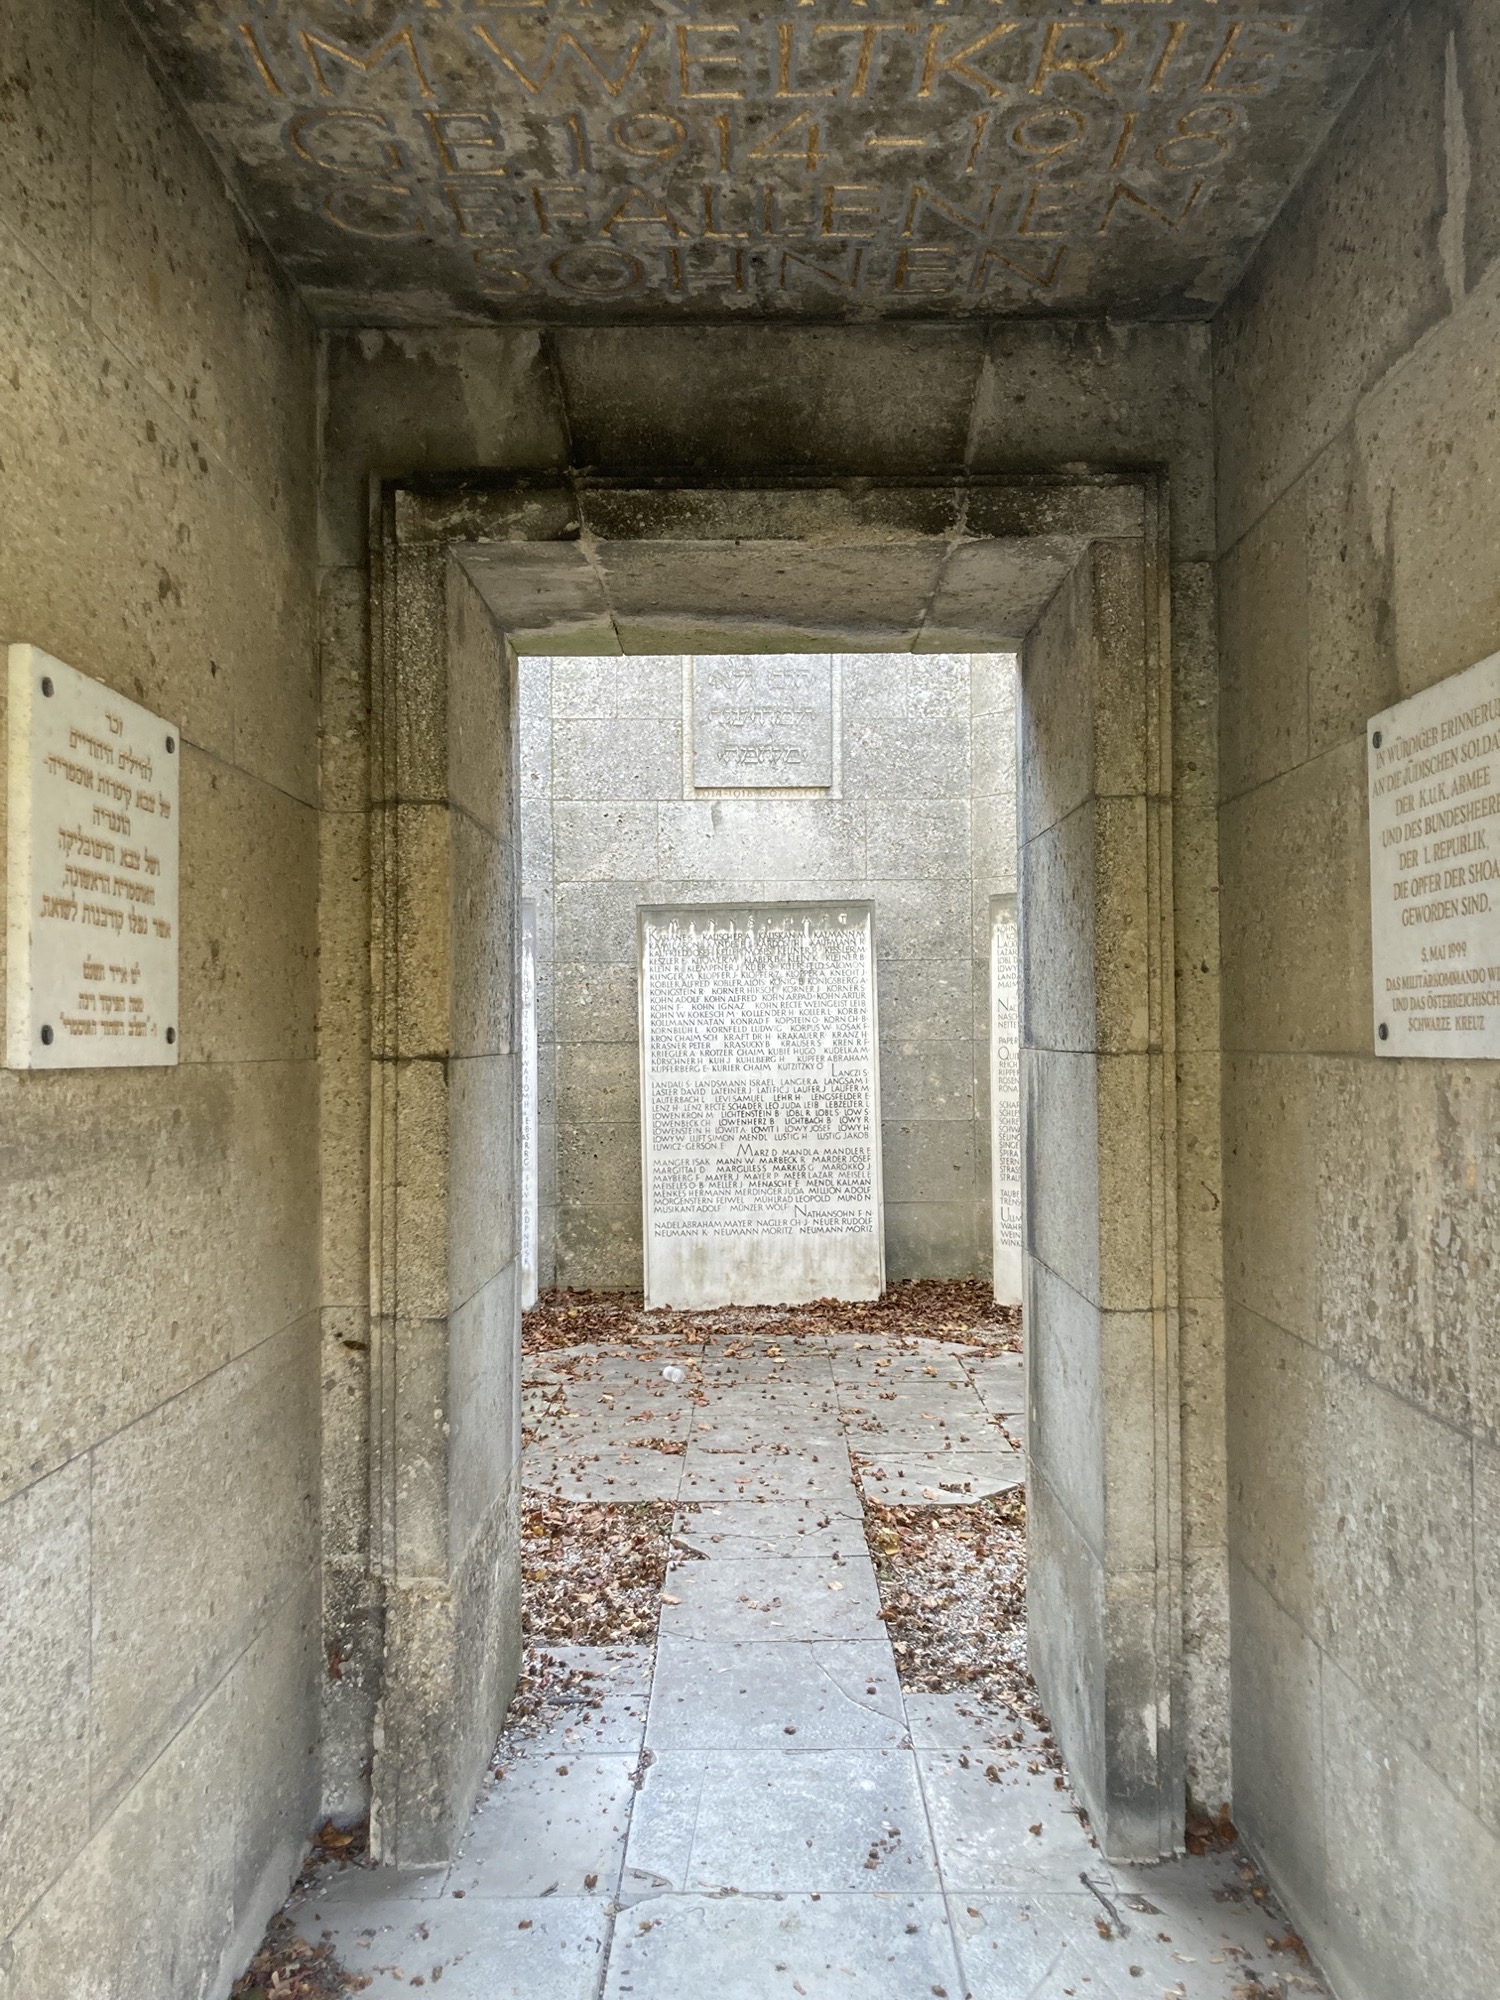 Blick durch den Zugang einer Gedenkstätte der Israelitischen Kultusgemeinde für die gefallenen des ersten Weltkriegs, links und rechts an der Wand weiße Steinfafeln, links mit hebräischen Schriftzeichen, rechts mit der deutschen Übersetzung, innerhalb der Gedenkstätte sind weitere große Steintafeln zu sehen, der Boden ist mit Herbstlaub bedeckt